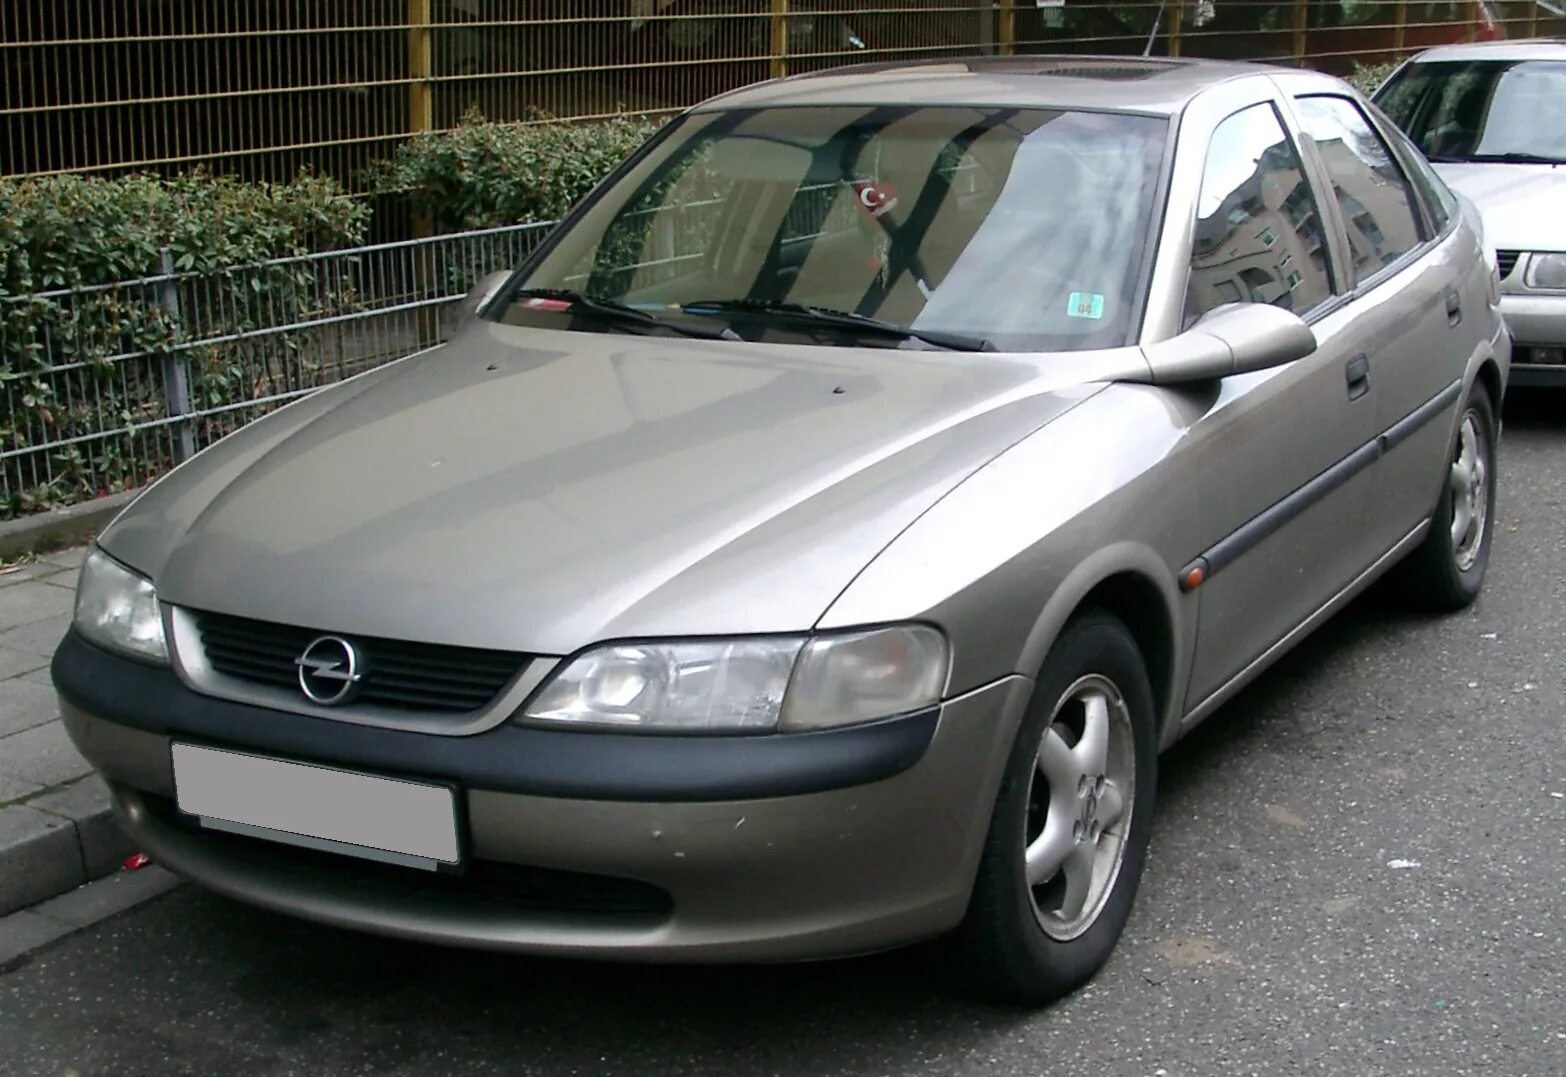 Вектра б 98. Opel Vectra b. Опель Вектра 2 1996. Опель Вектра 1.6 1996. Opel Vectra b 1.6.